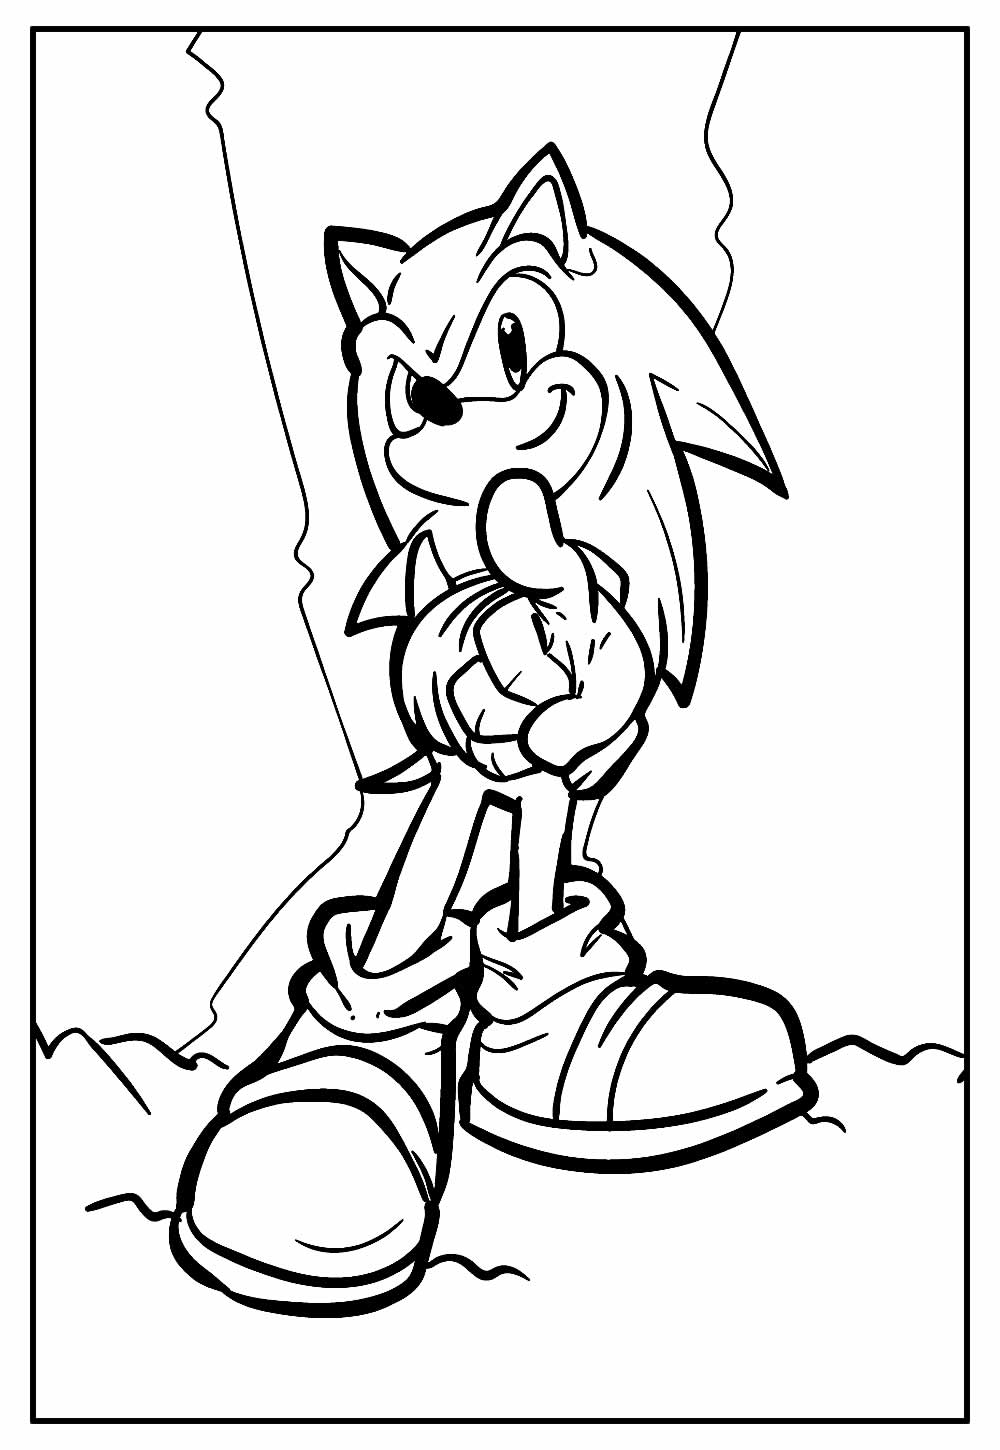 Desenho do Sonic Hedgehog para colorir